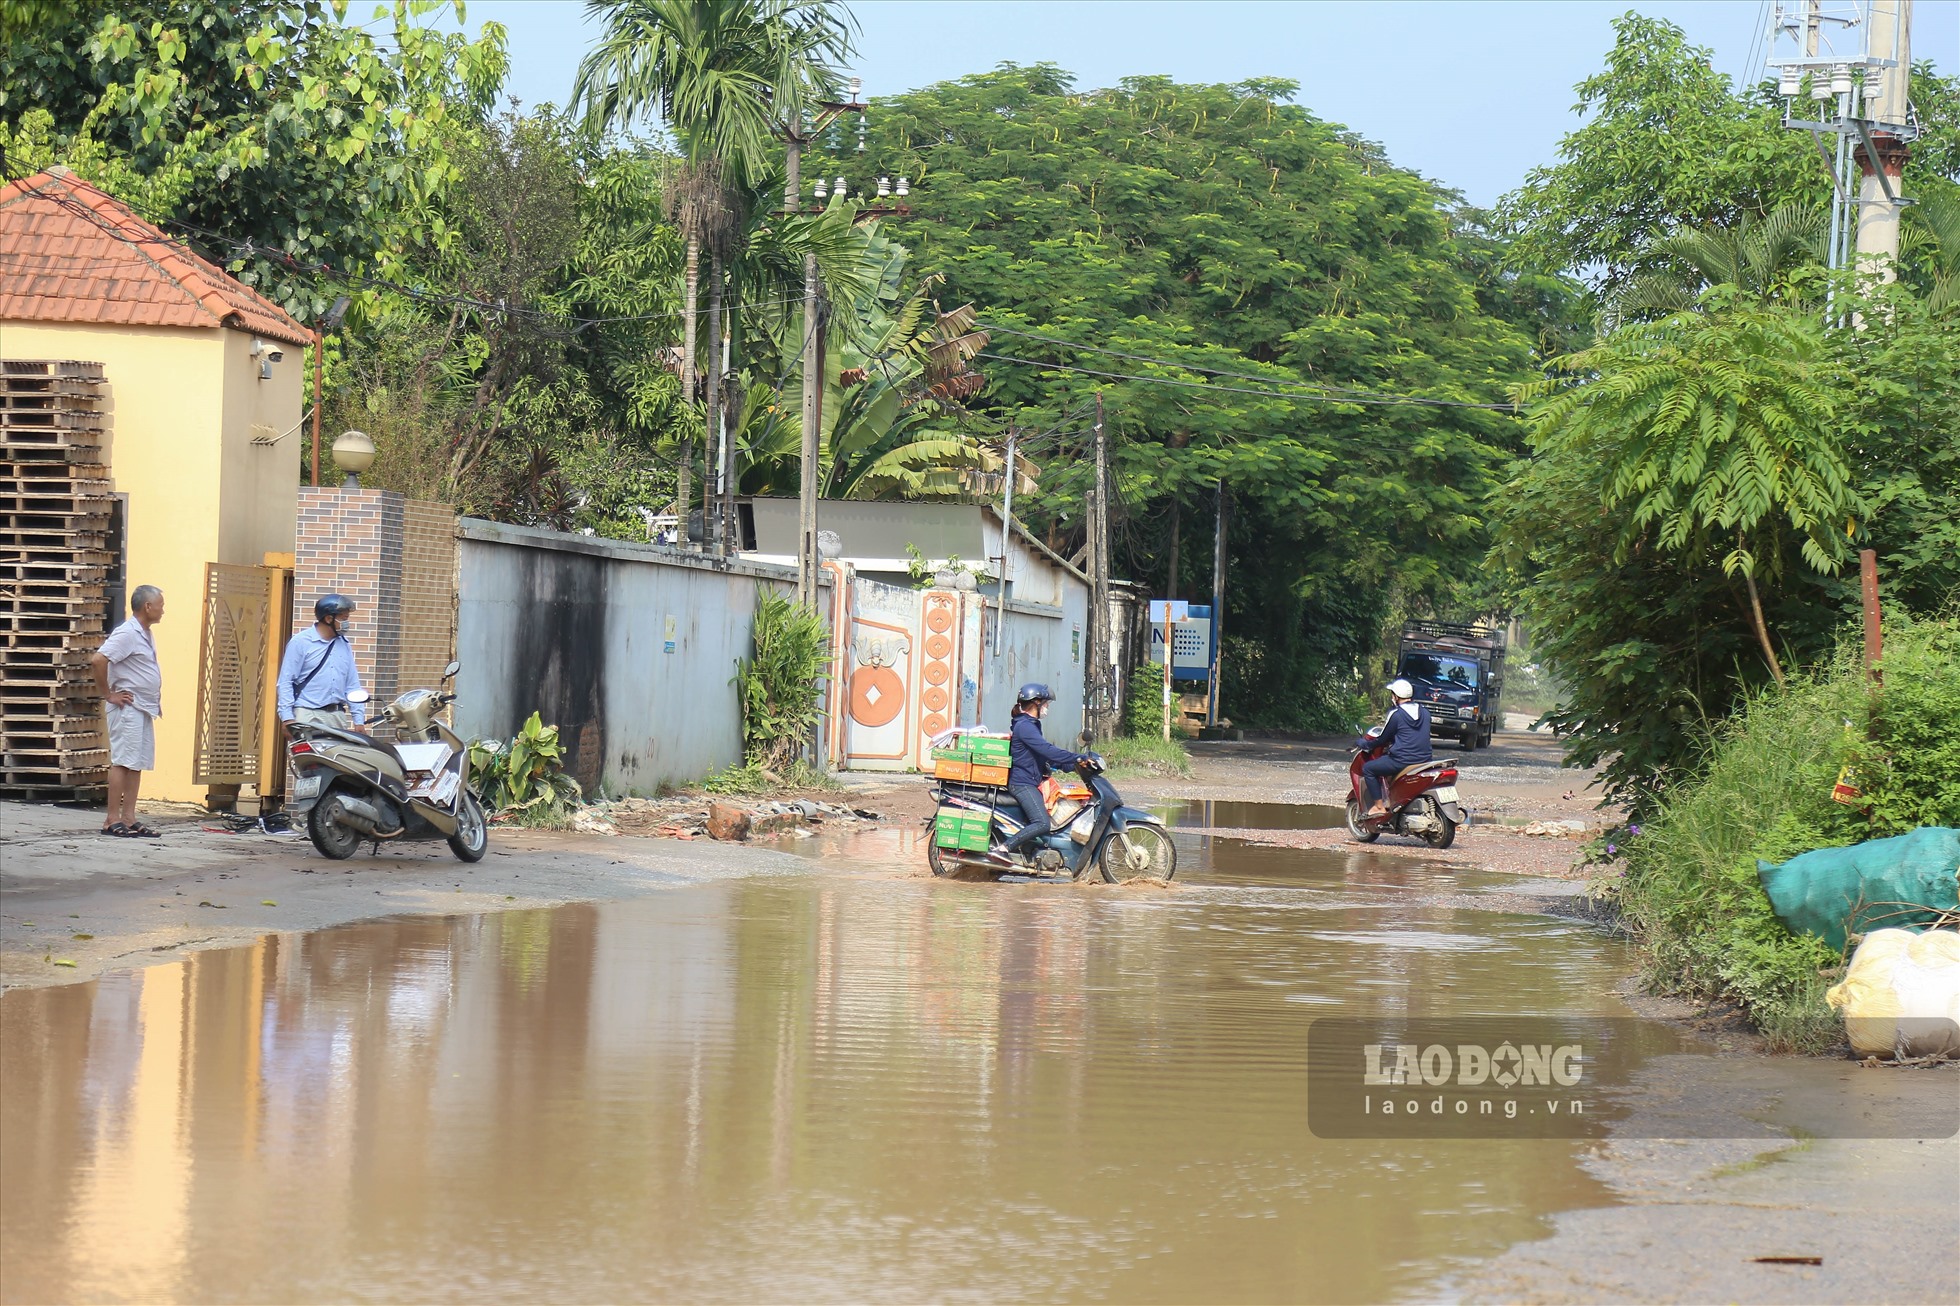 Đơn cử đoạn từ Bãi Phượng đi qua Cụm công nghiệp Biên Giang xuất hiện nhiều hố lớn, mặt đường gồ ghề, đọng nước gây mất an toàn giao thông.